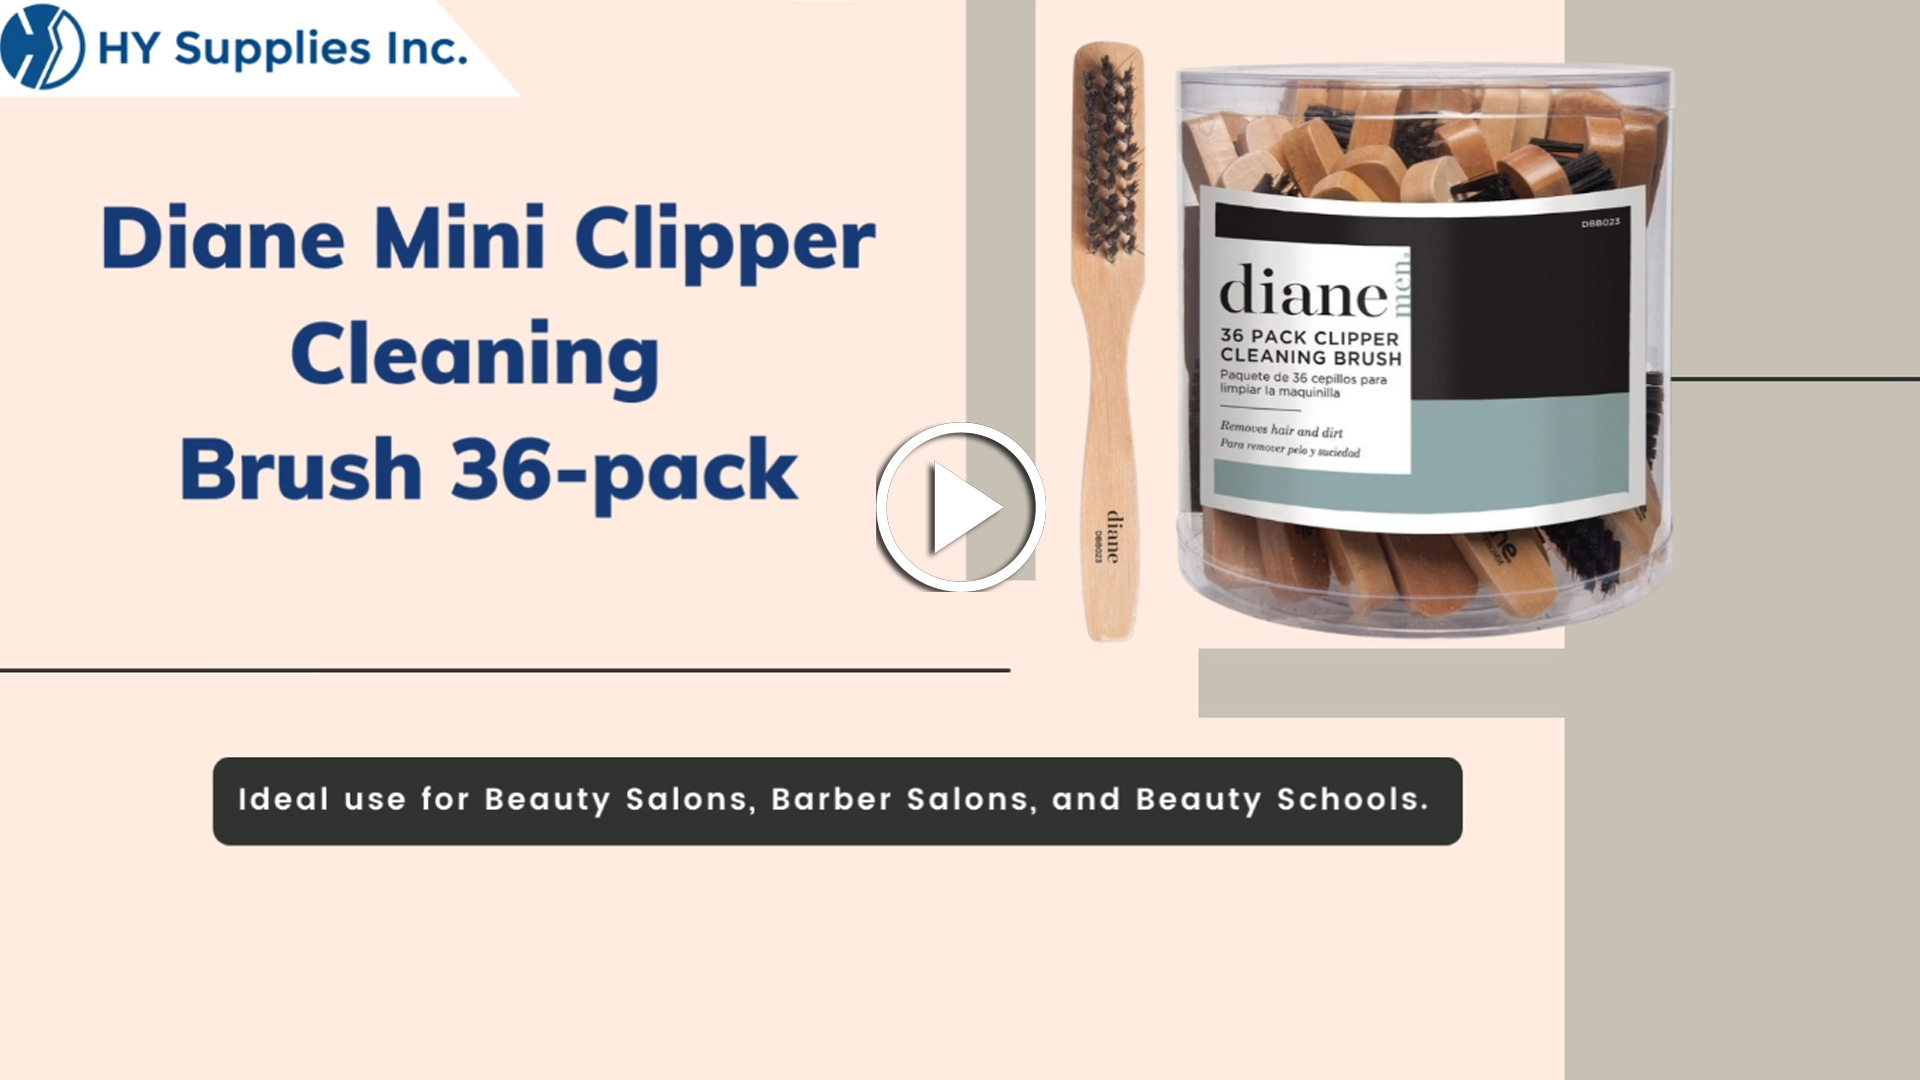 Diane Mini Clipper Cleaning Brush 36-pack